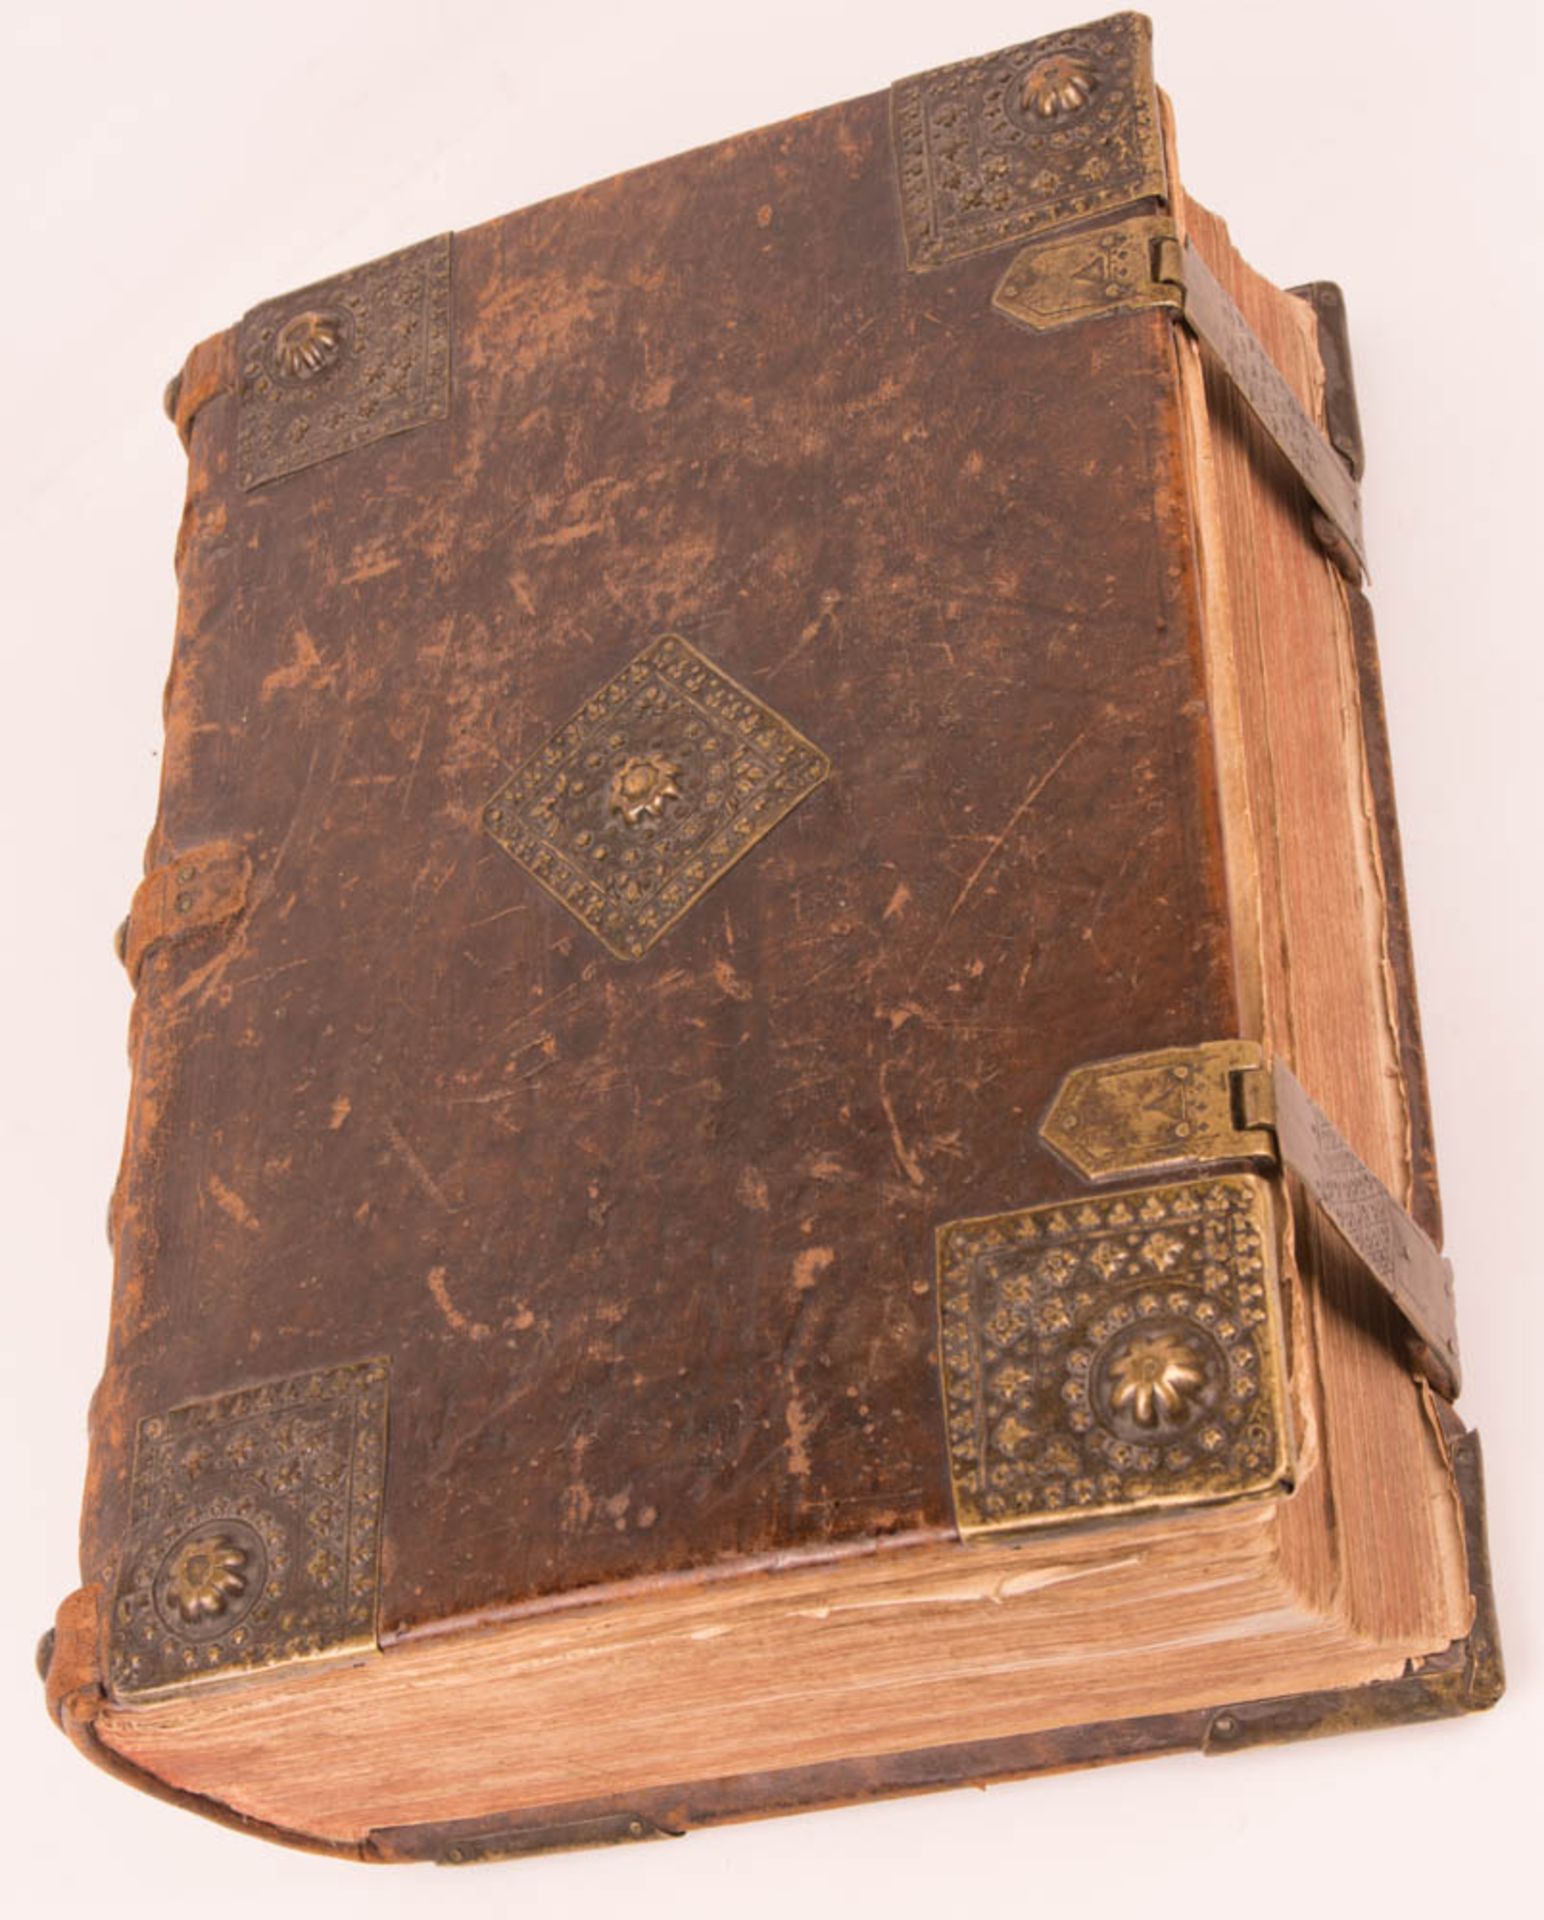 Biblia germanica - Froschauer Bibel, wohl mit Illustrationen von Virgil Solis Zürich, 1536. - Bild 23 aus 23